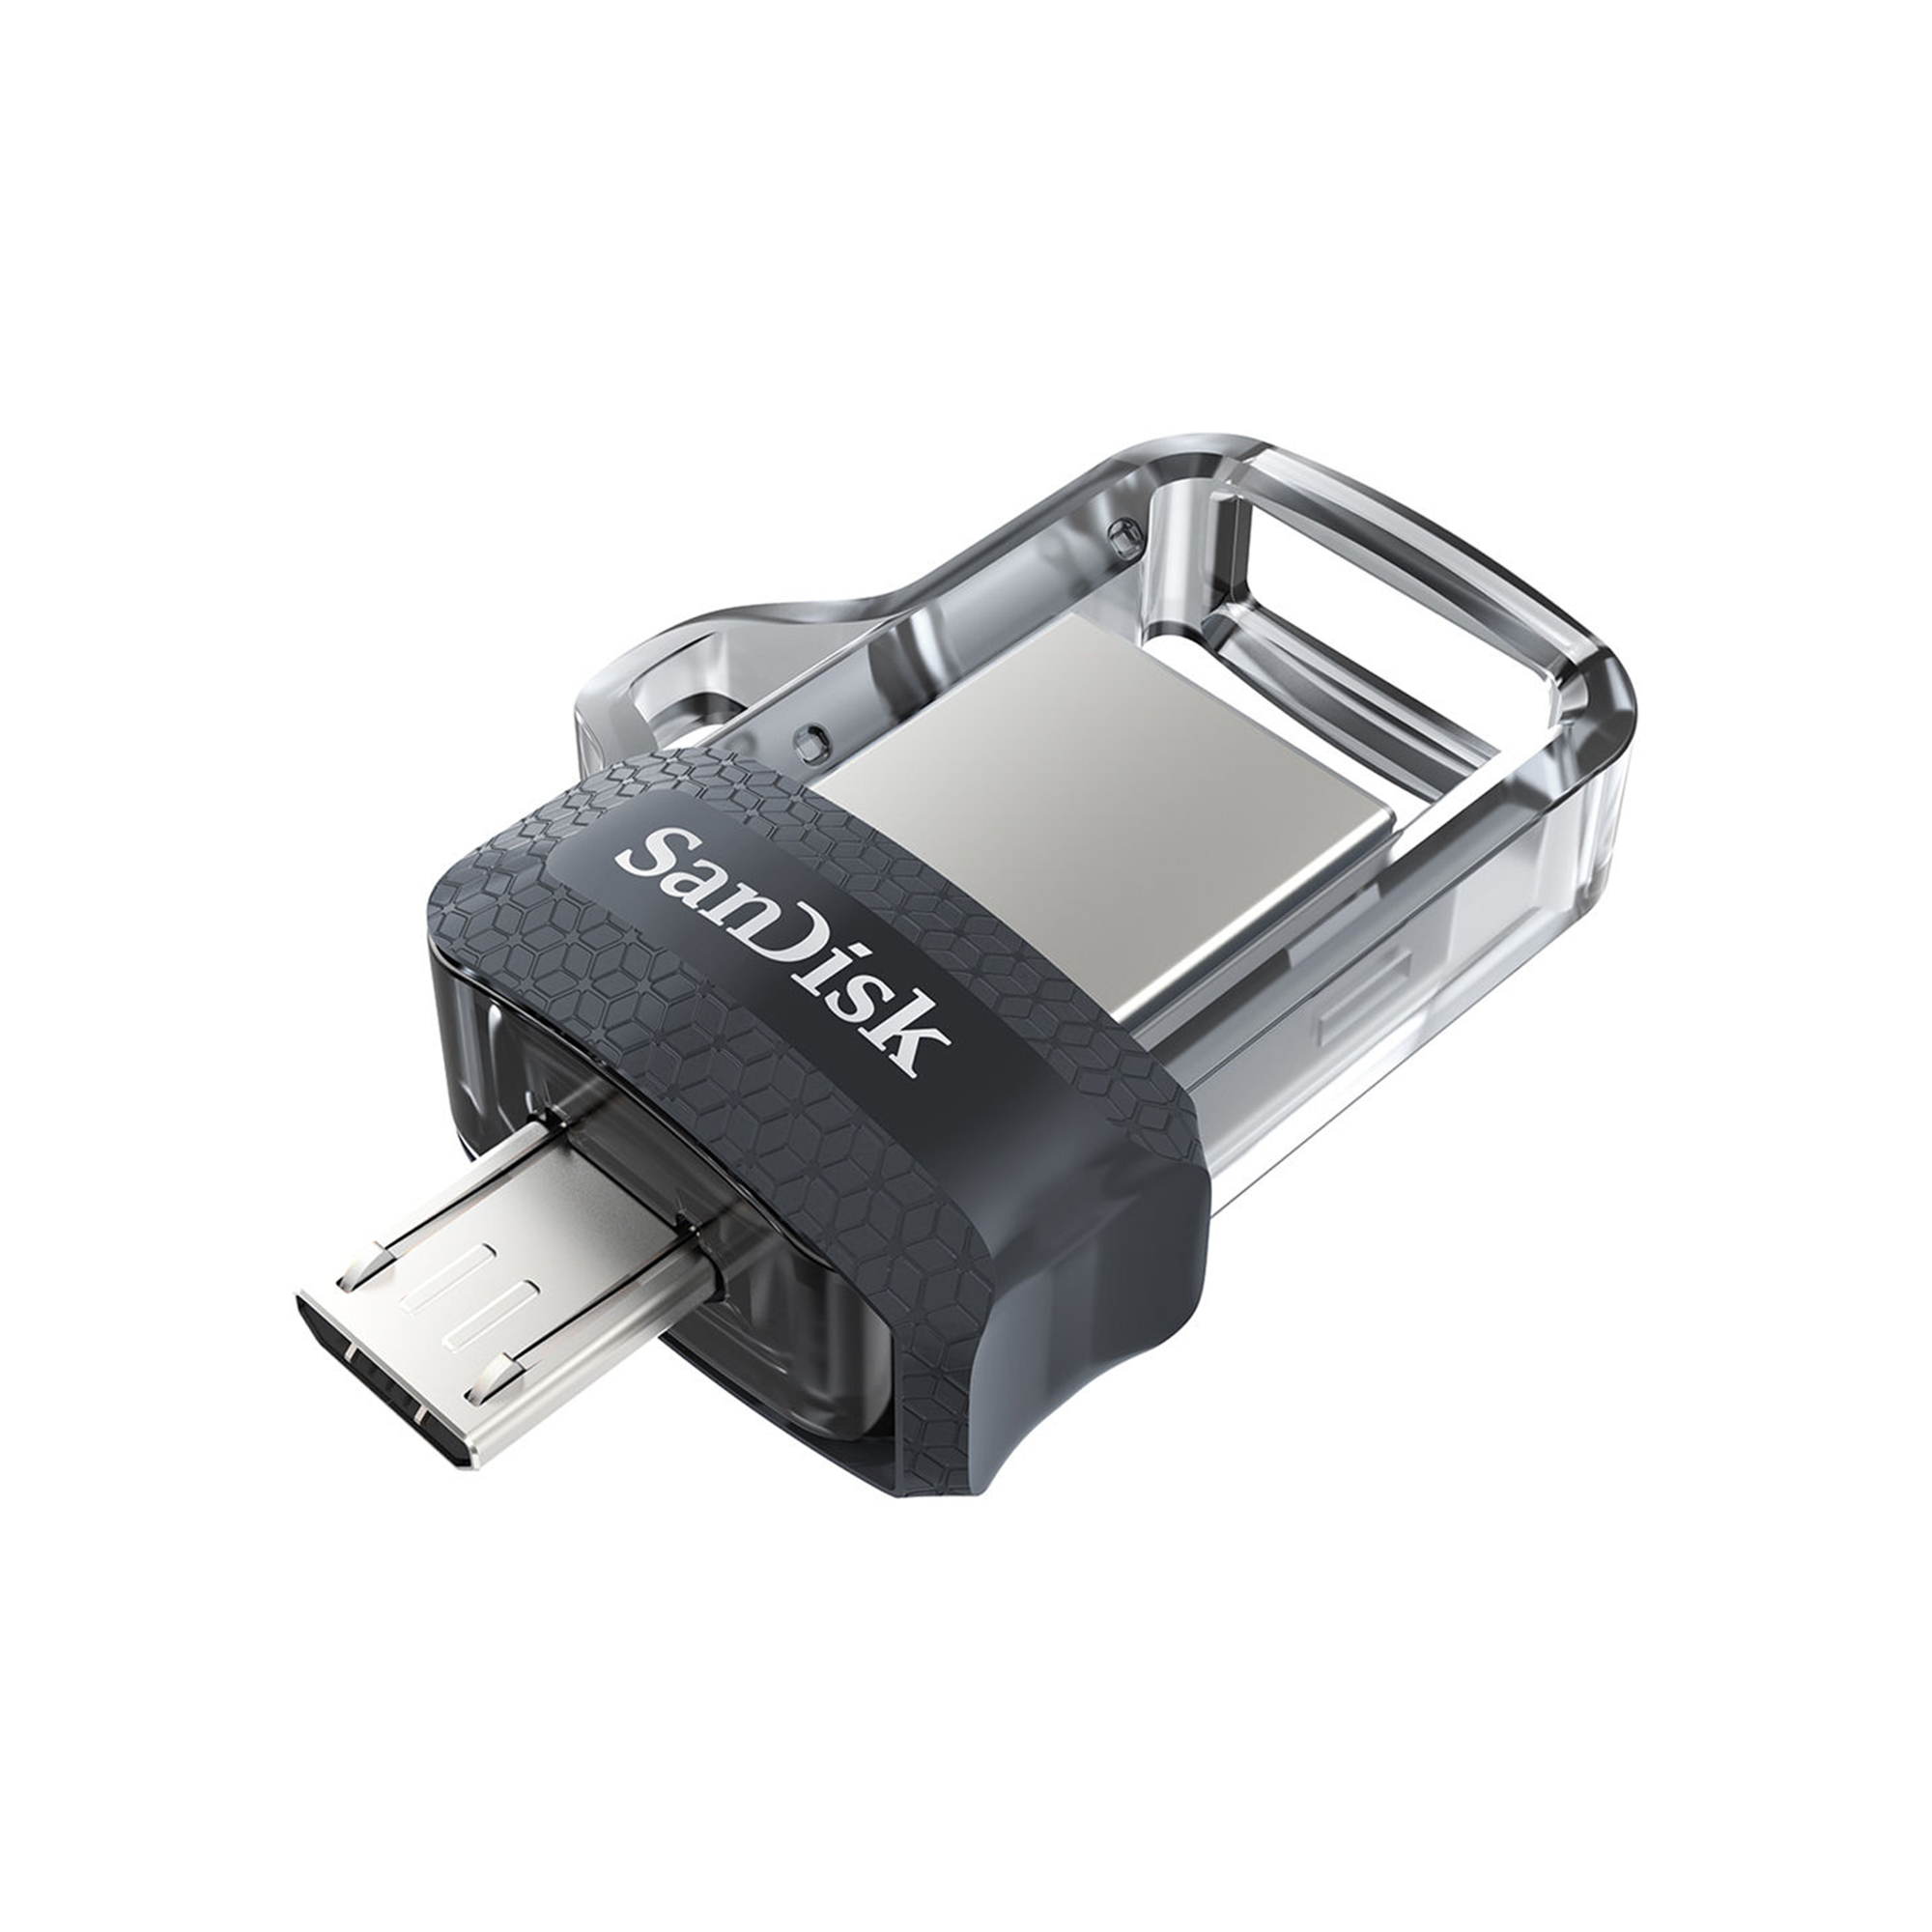 SanDisk 64GB Ultra Dual m3.0 USB 3.0 / micro-USB Flash Drive